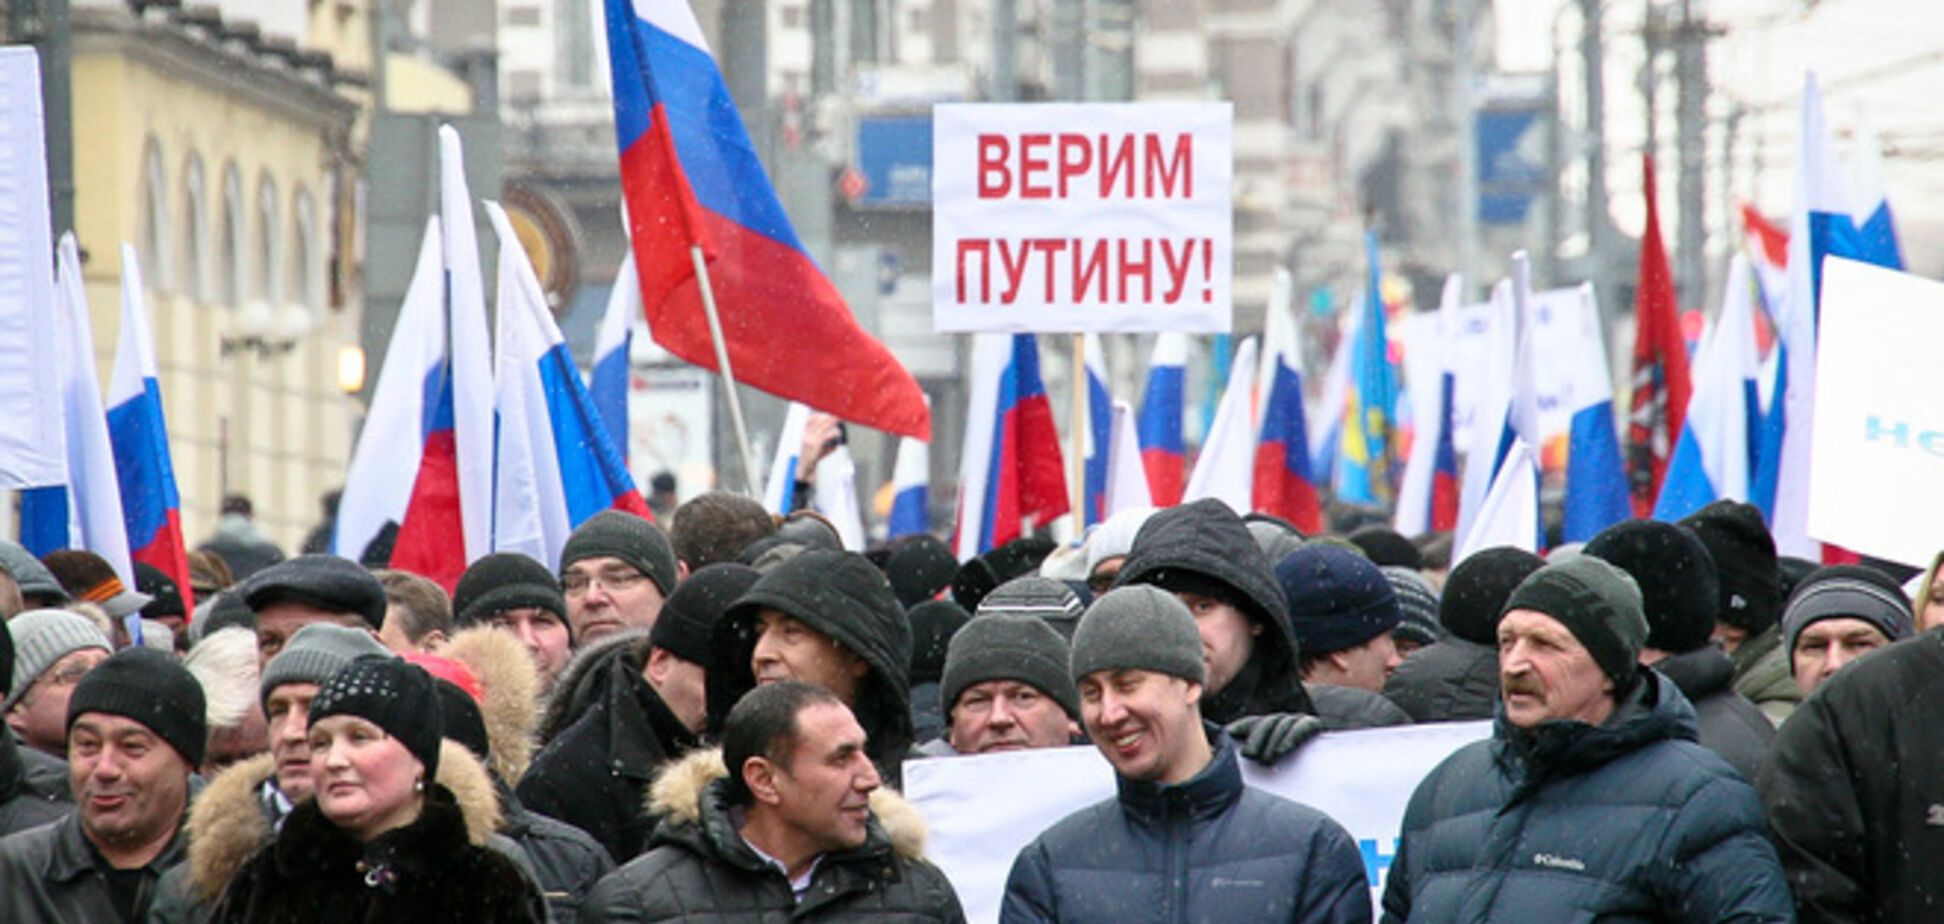 Немцов объяснил, почему в России невозможен Майдан